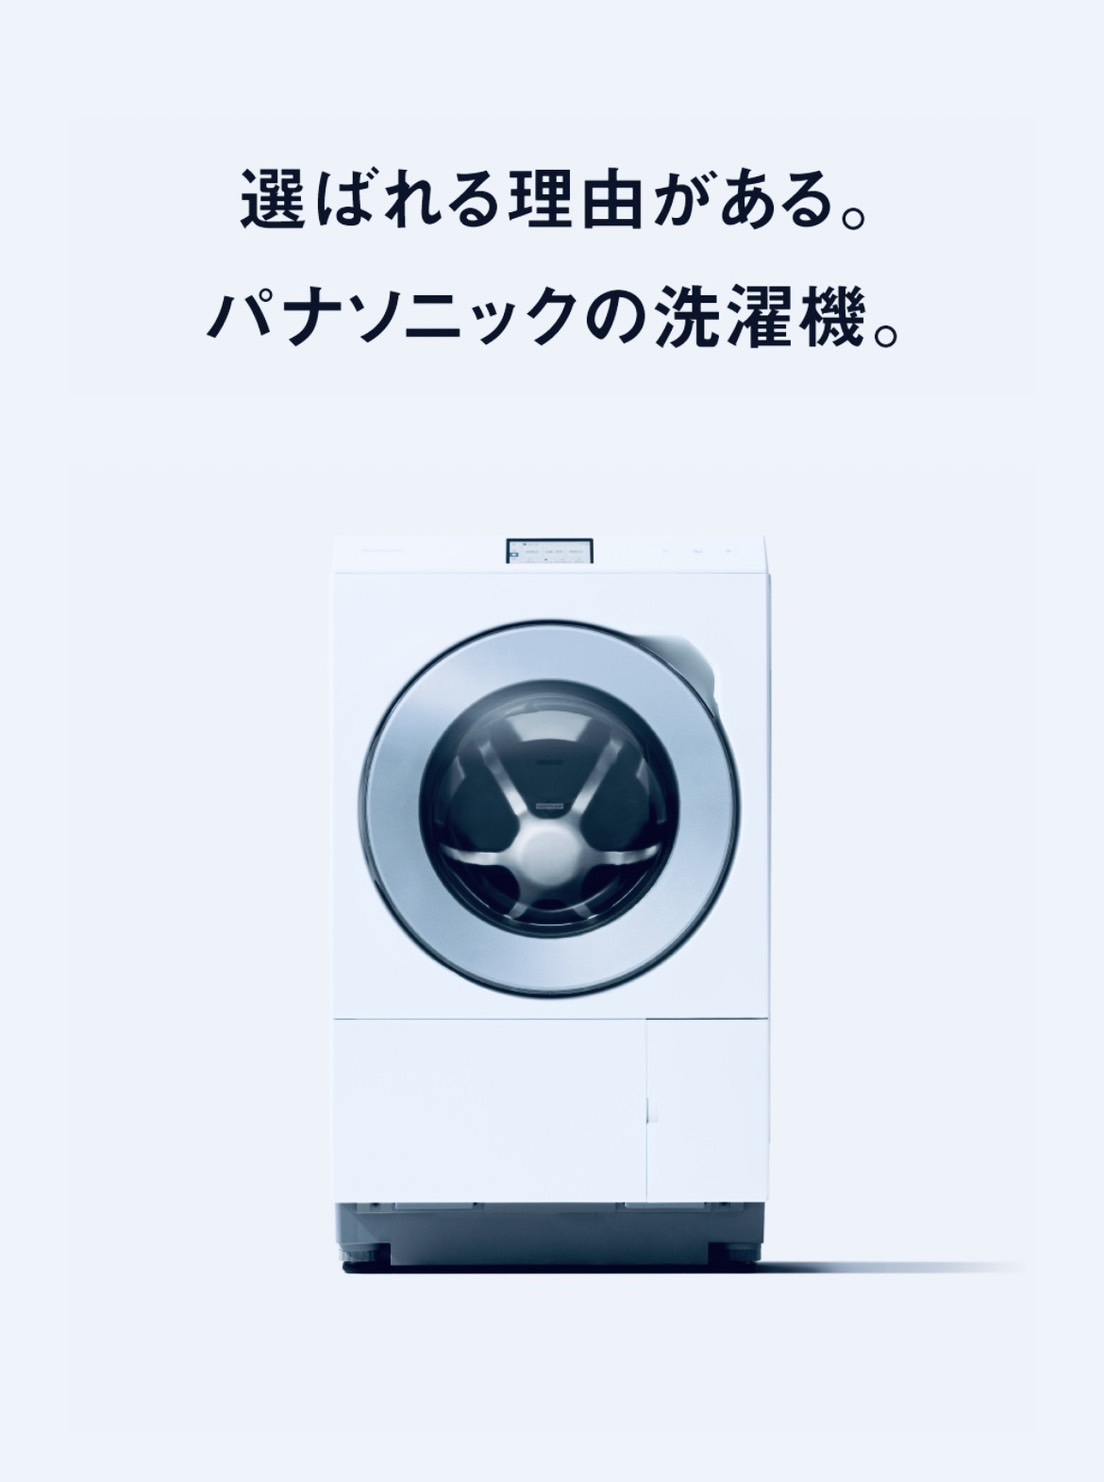 Panasonic/パナソニック ななめドラム式洗濯乾燥機 はやふわ乾燥 ヒートポンプ方式 をお売りください！！